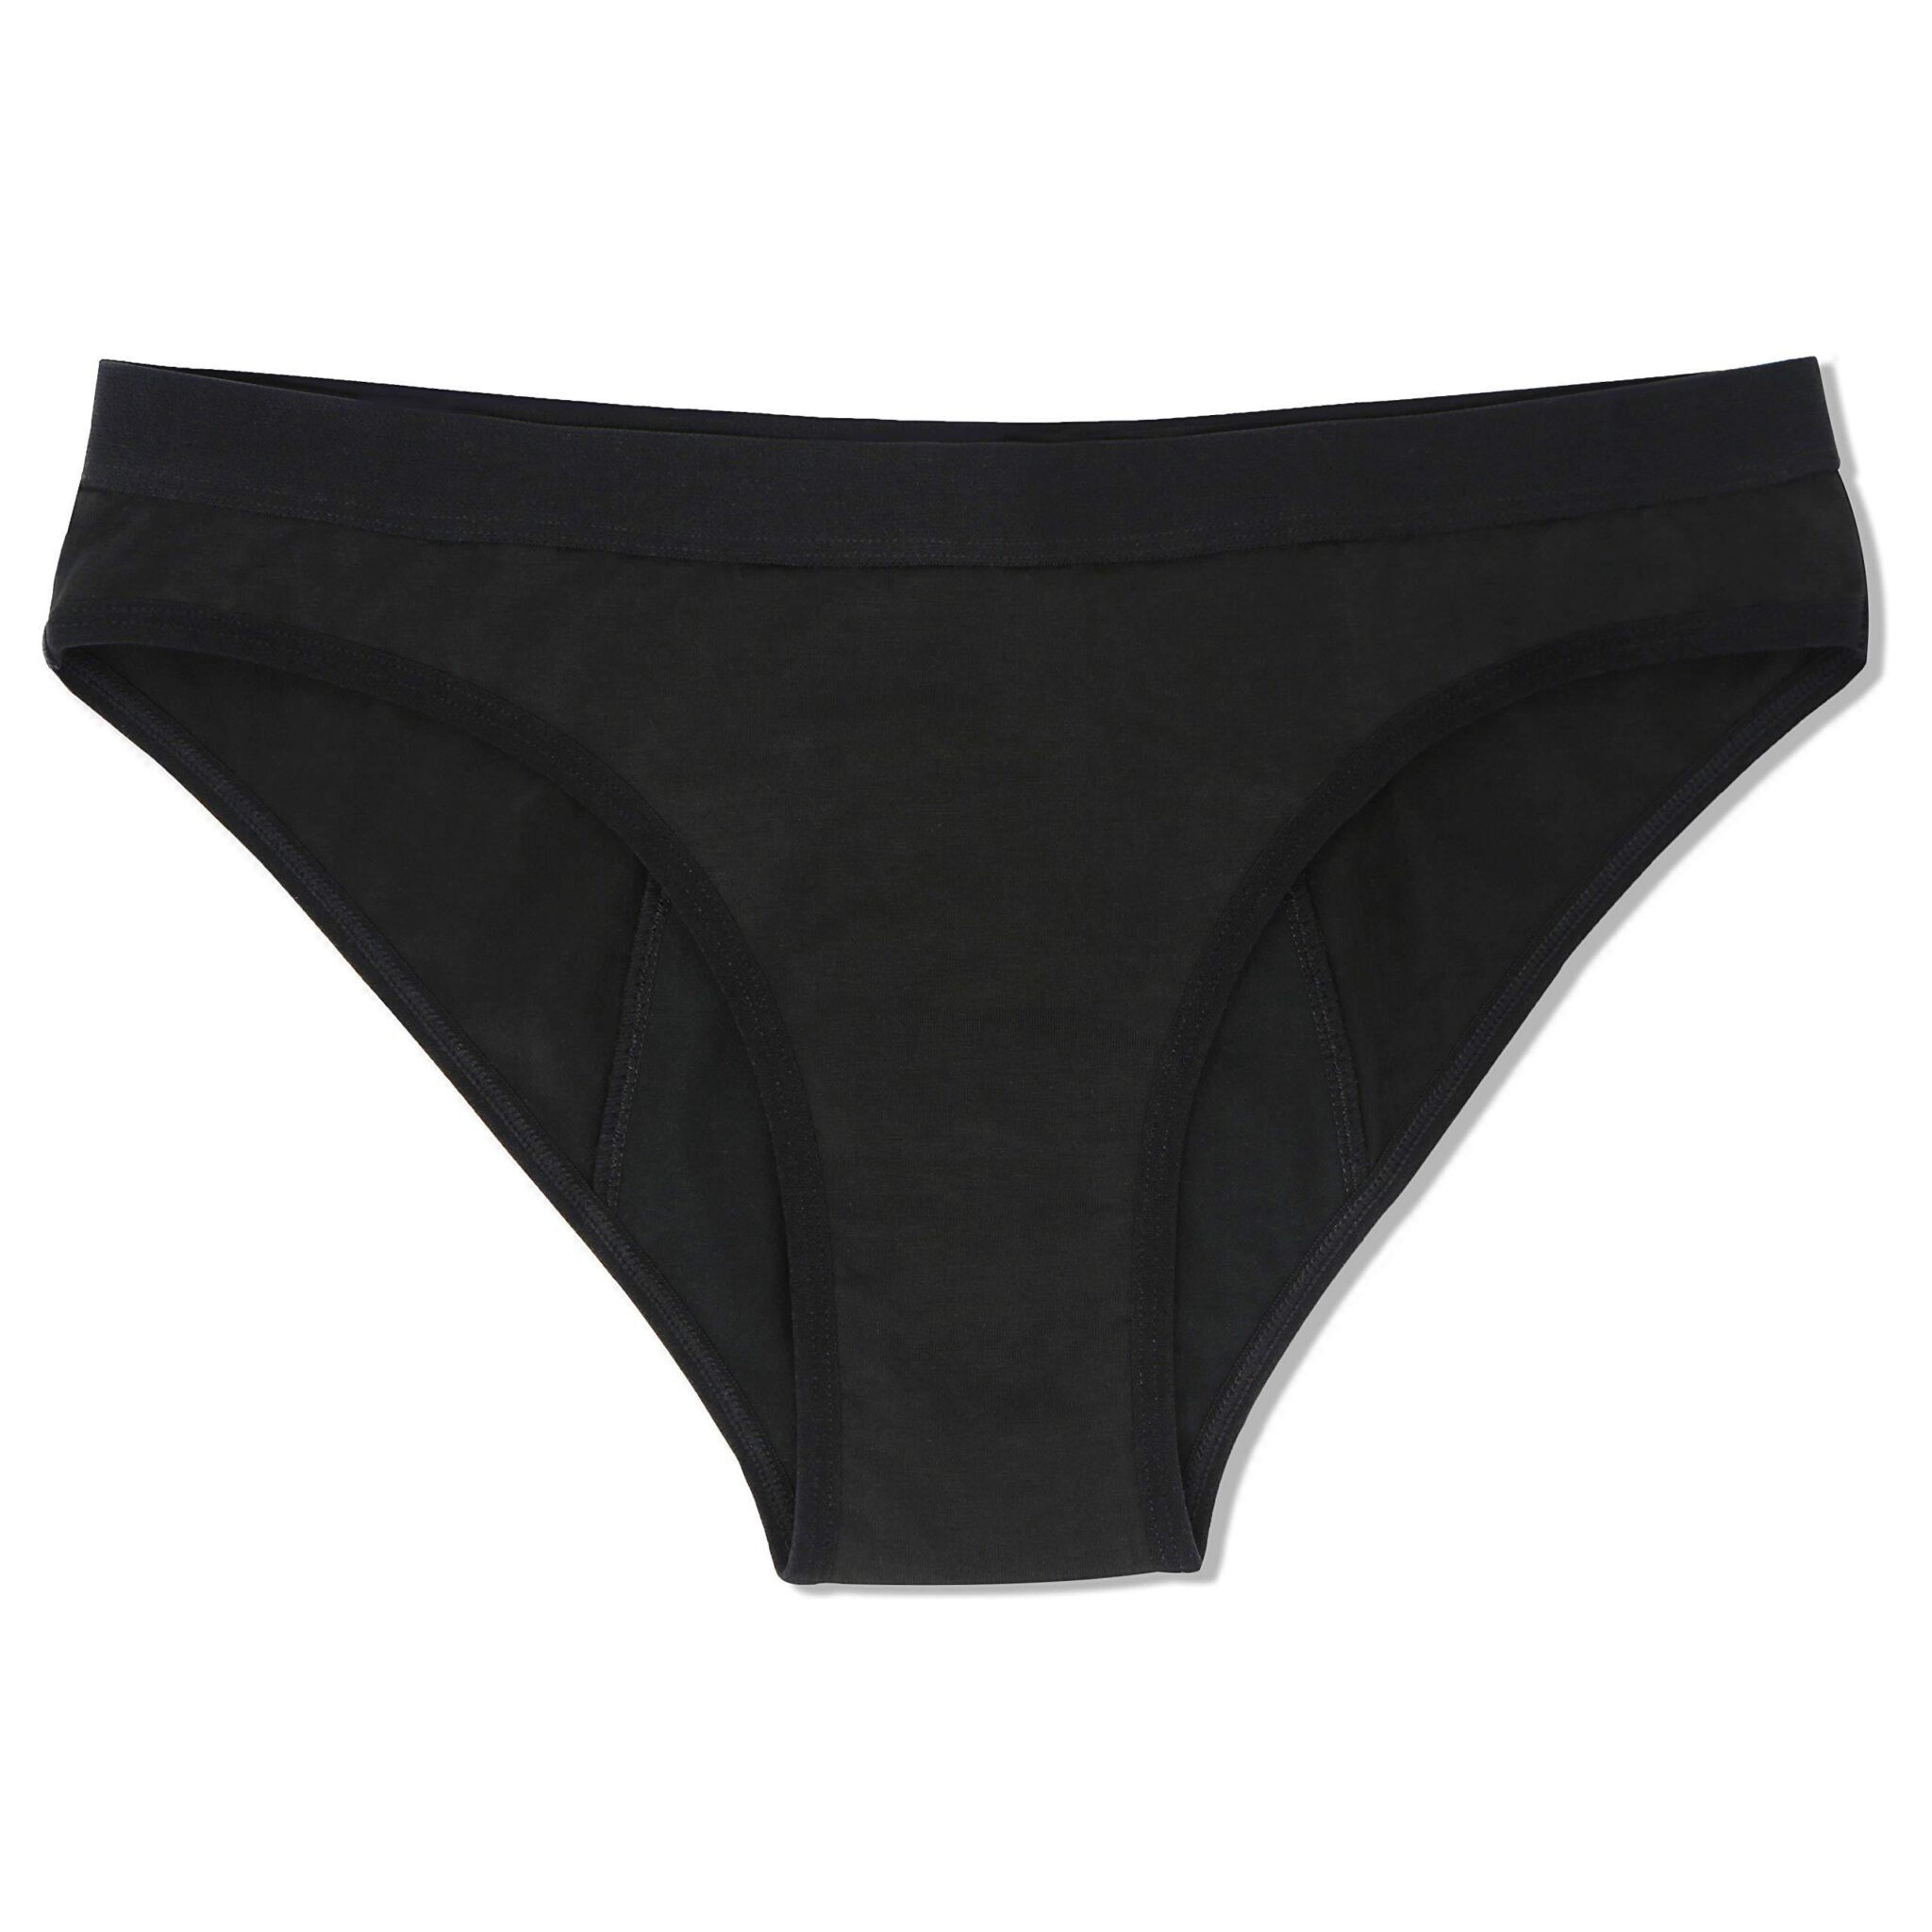 Cora period underwear, black